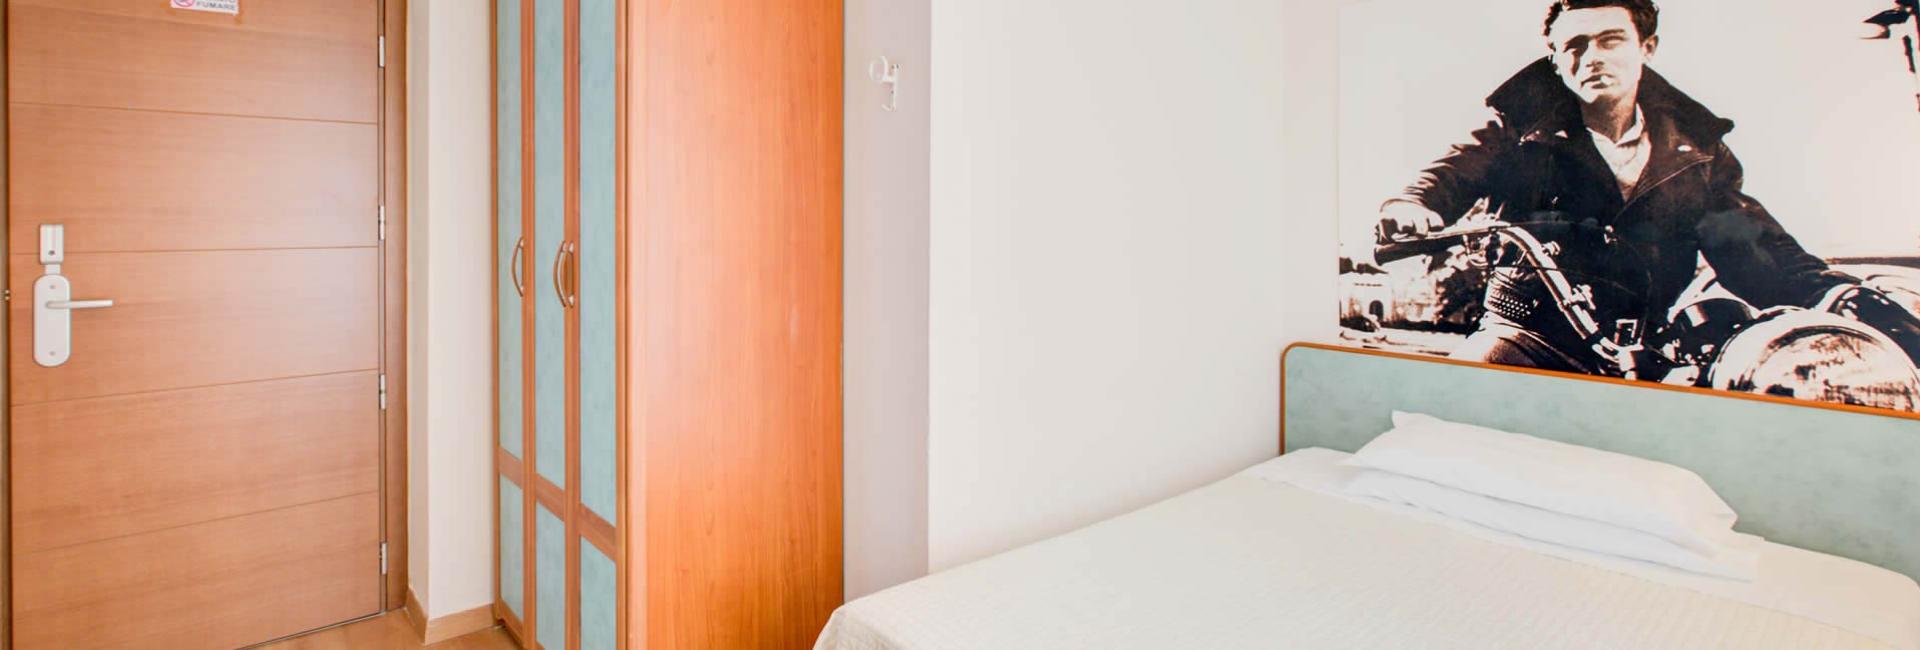 hotelsympathy en rooms 004